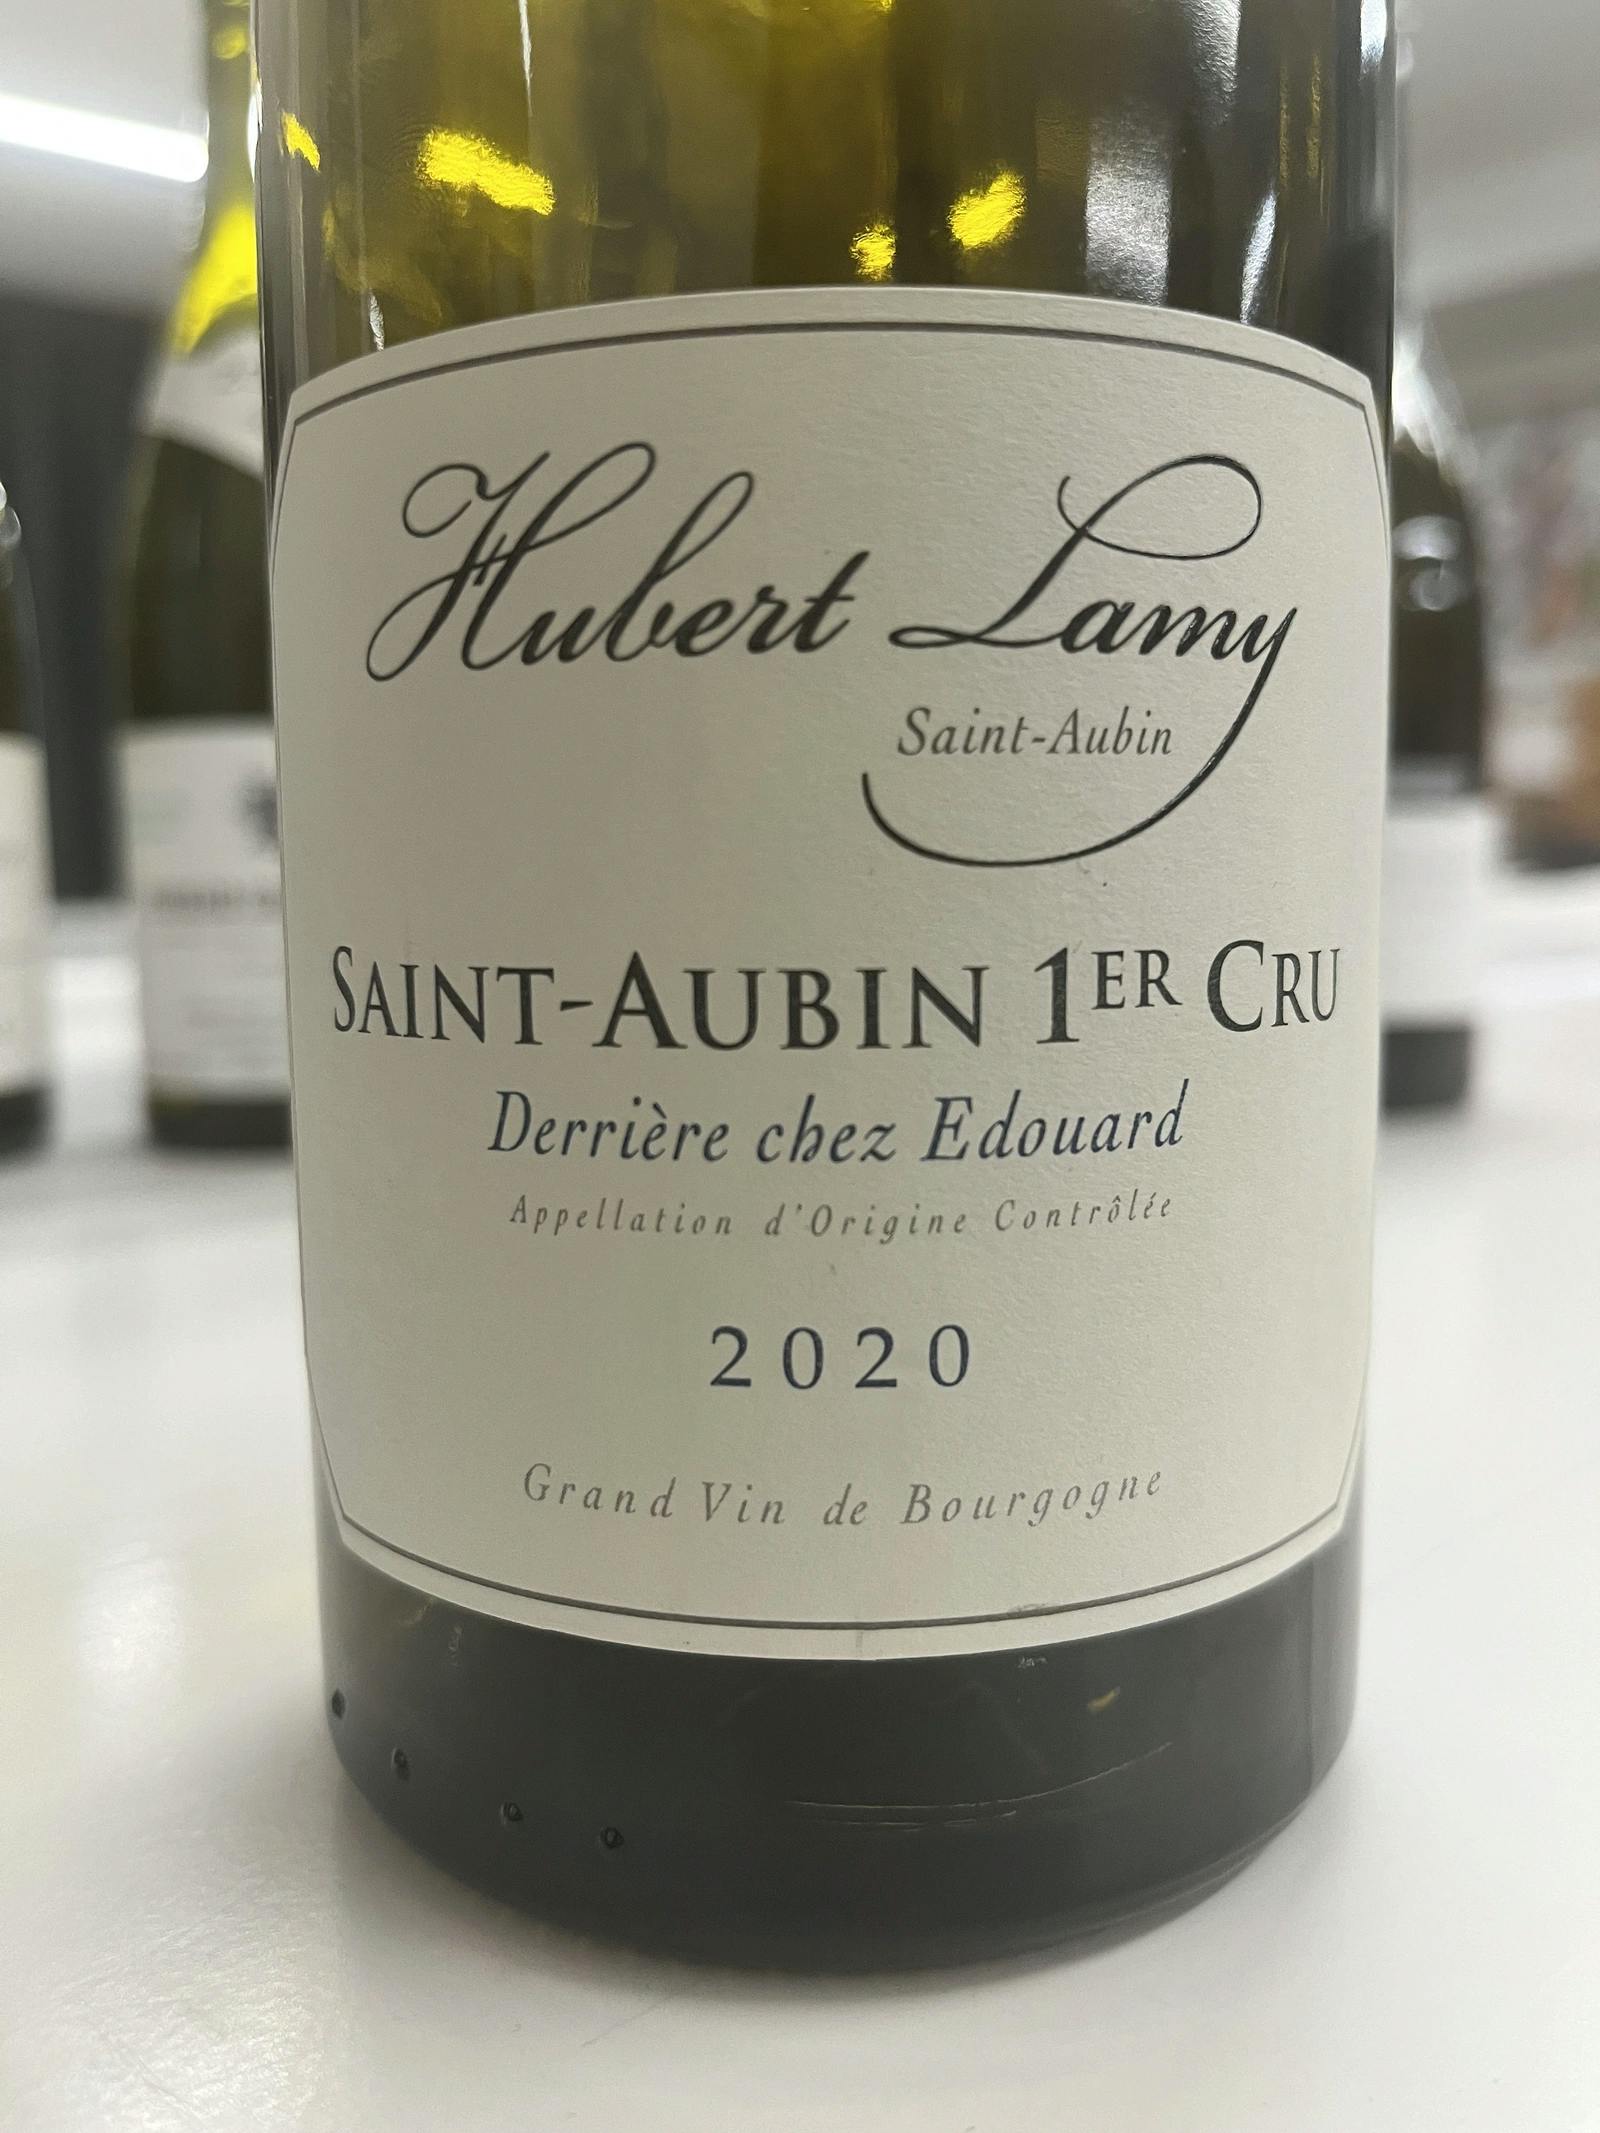 Hubert Lamy Saint-Aubin 1er Cru Derrière chez Edouard 2020